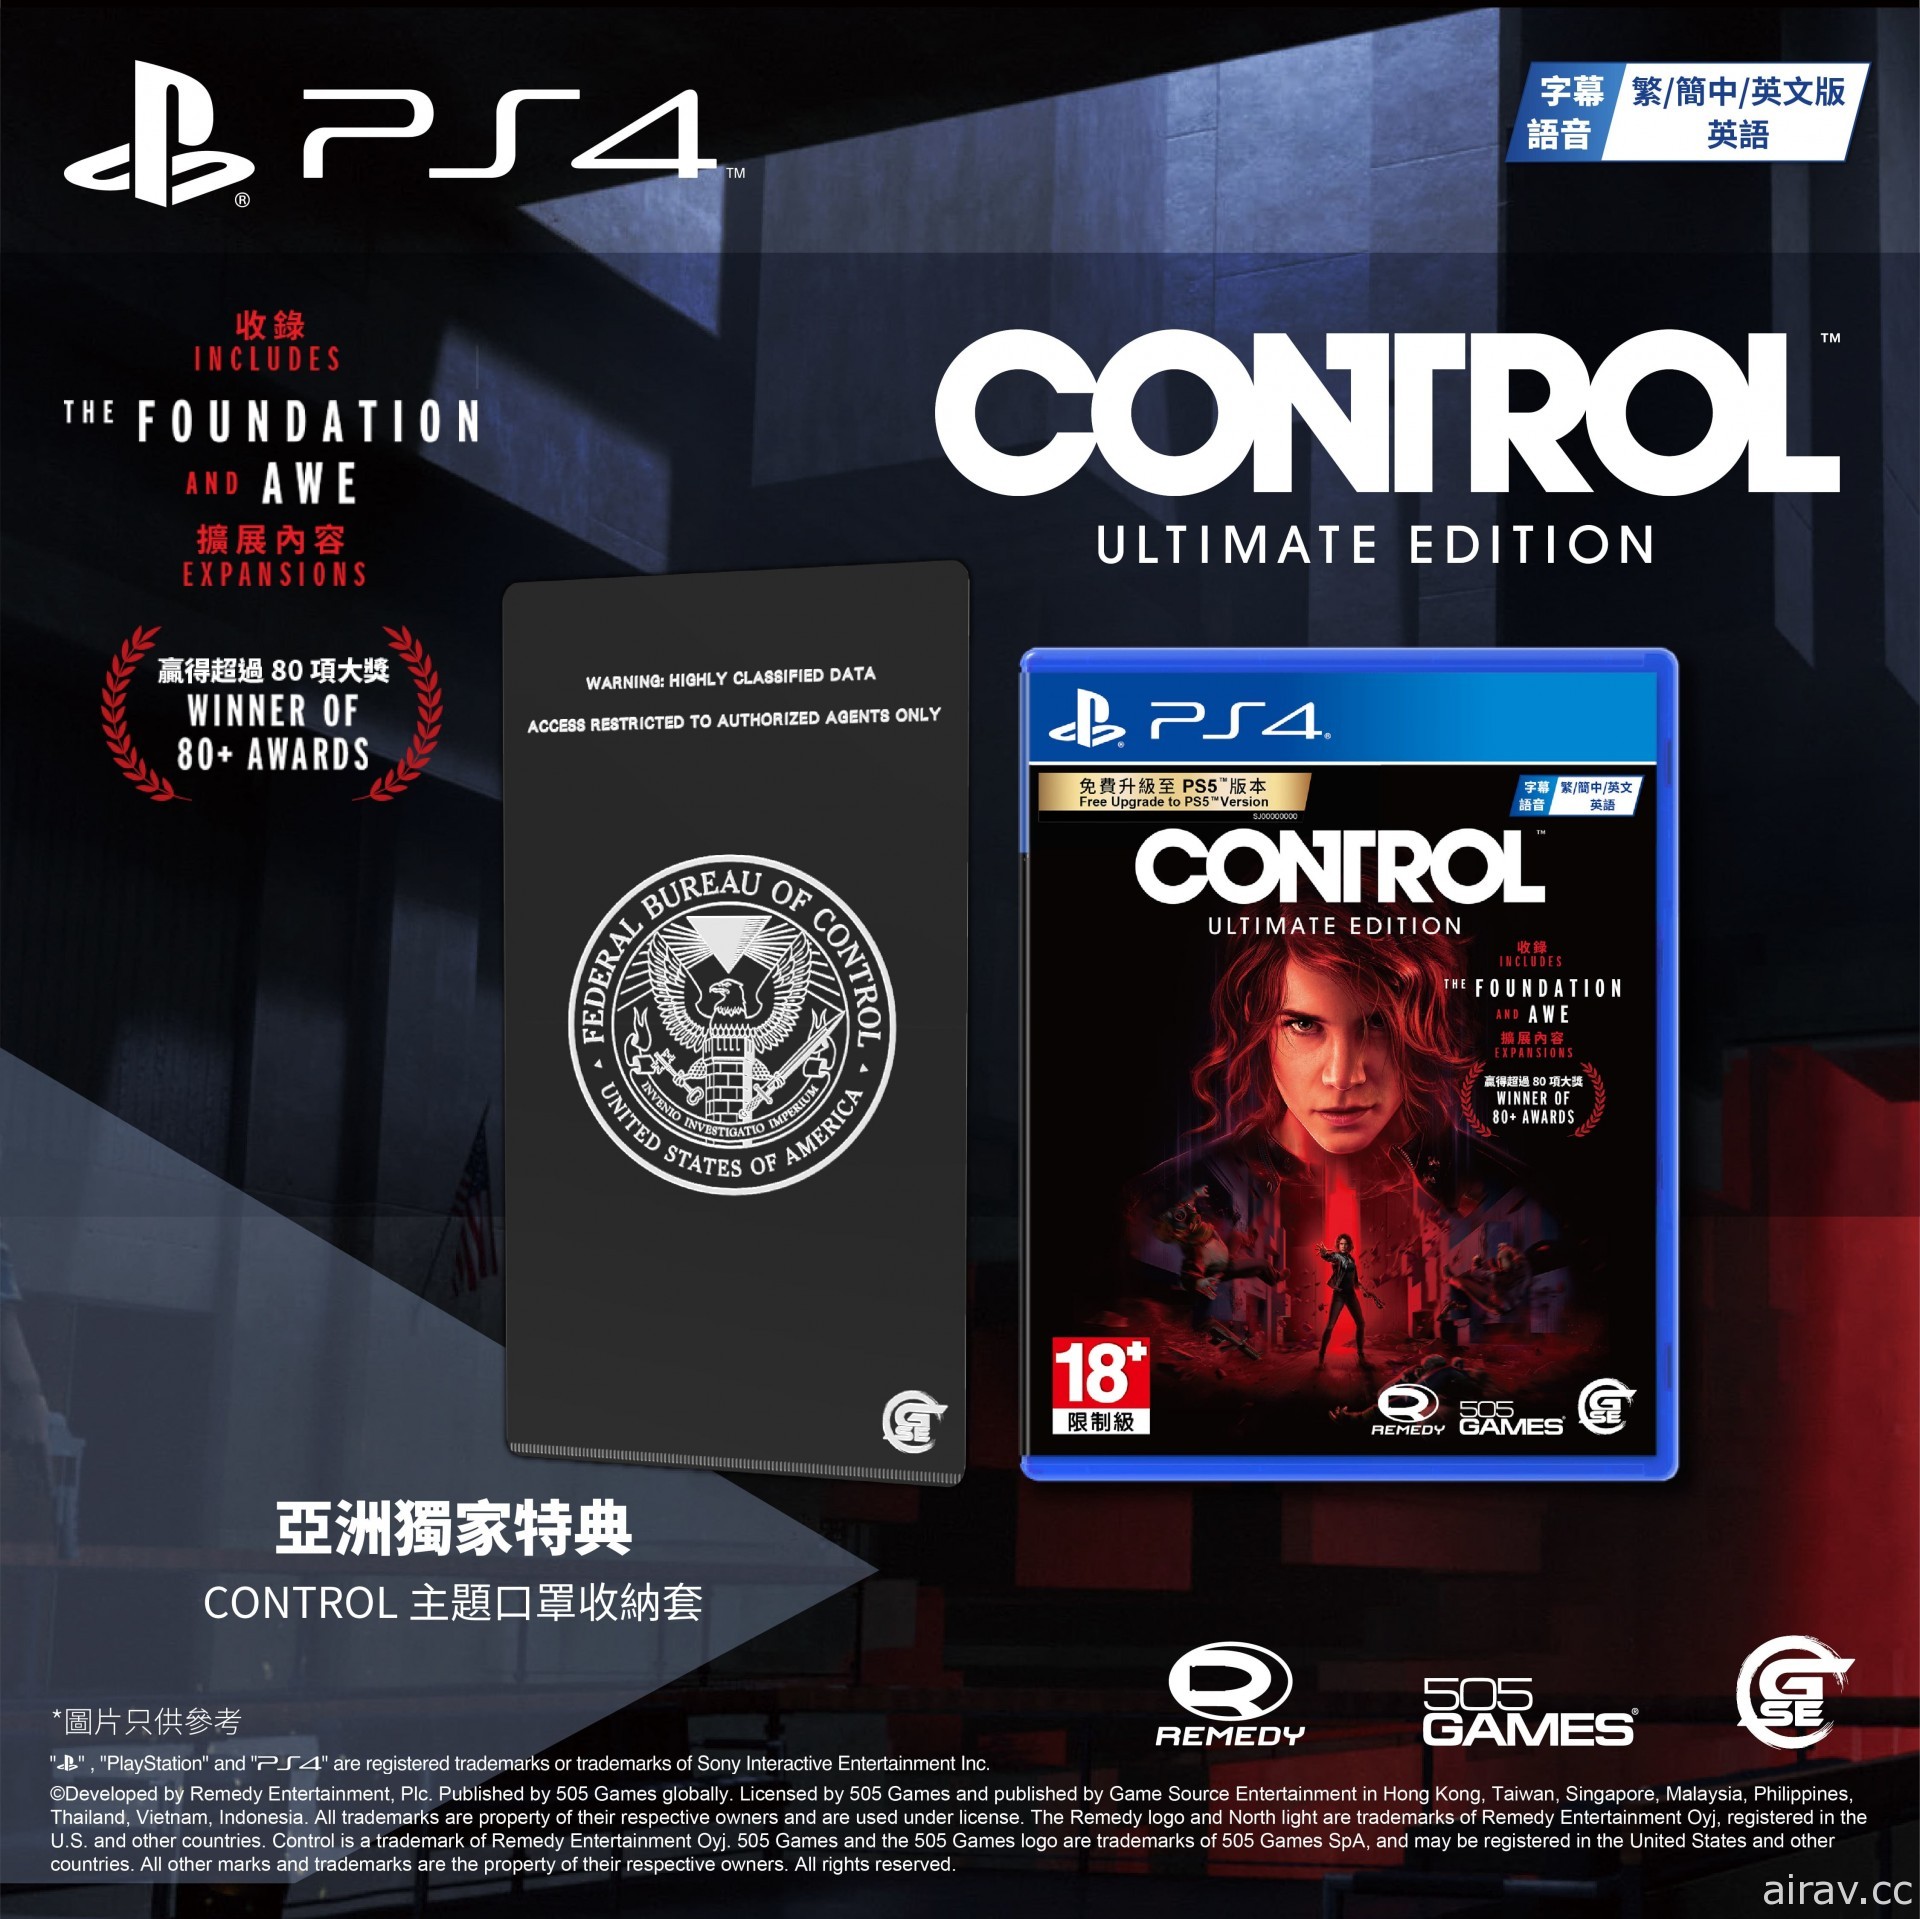 《控制 CONTROL 终极版》即将推出亚洲完全数量限定版